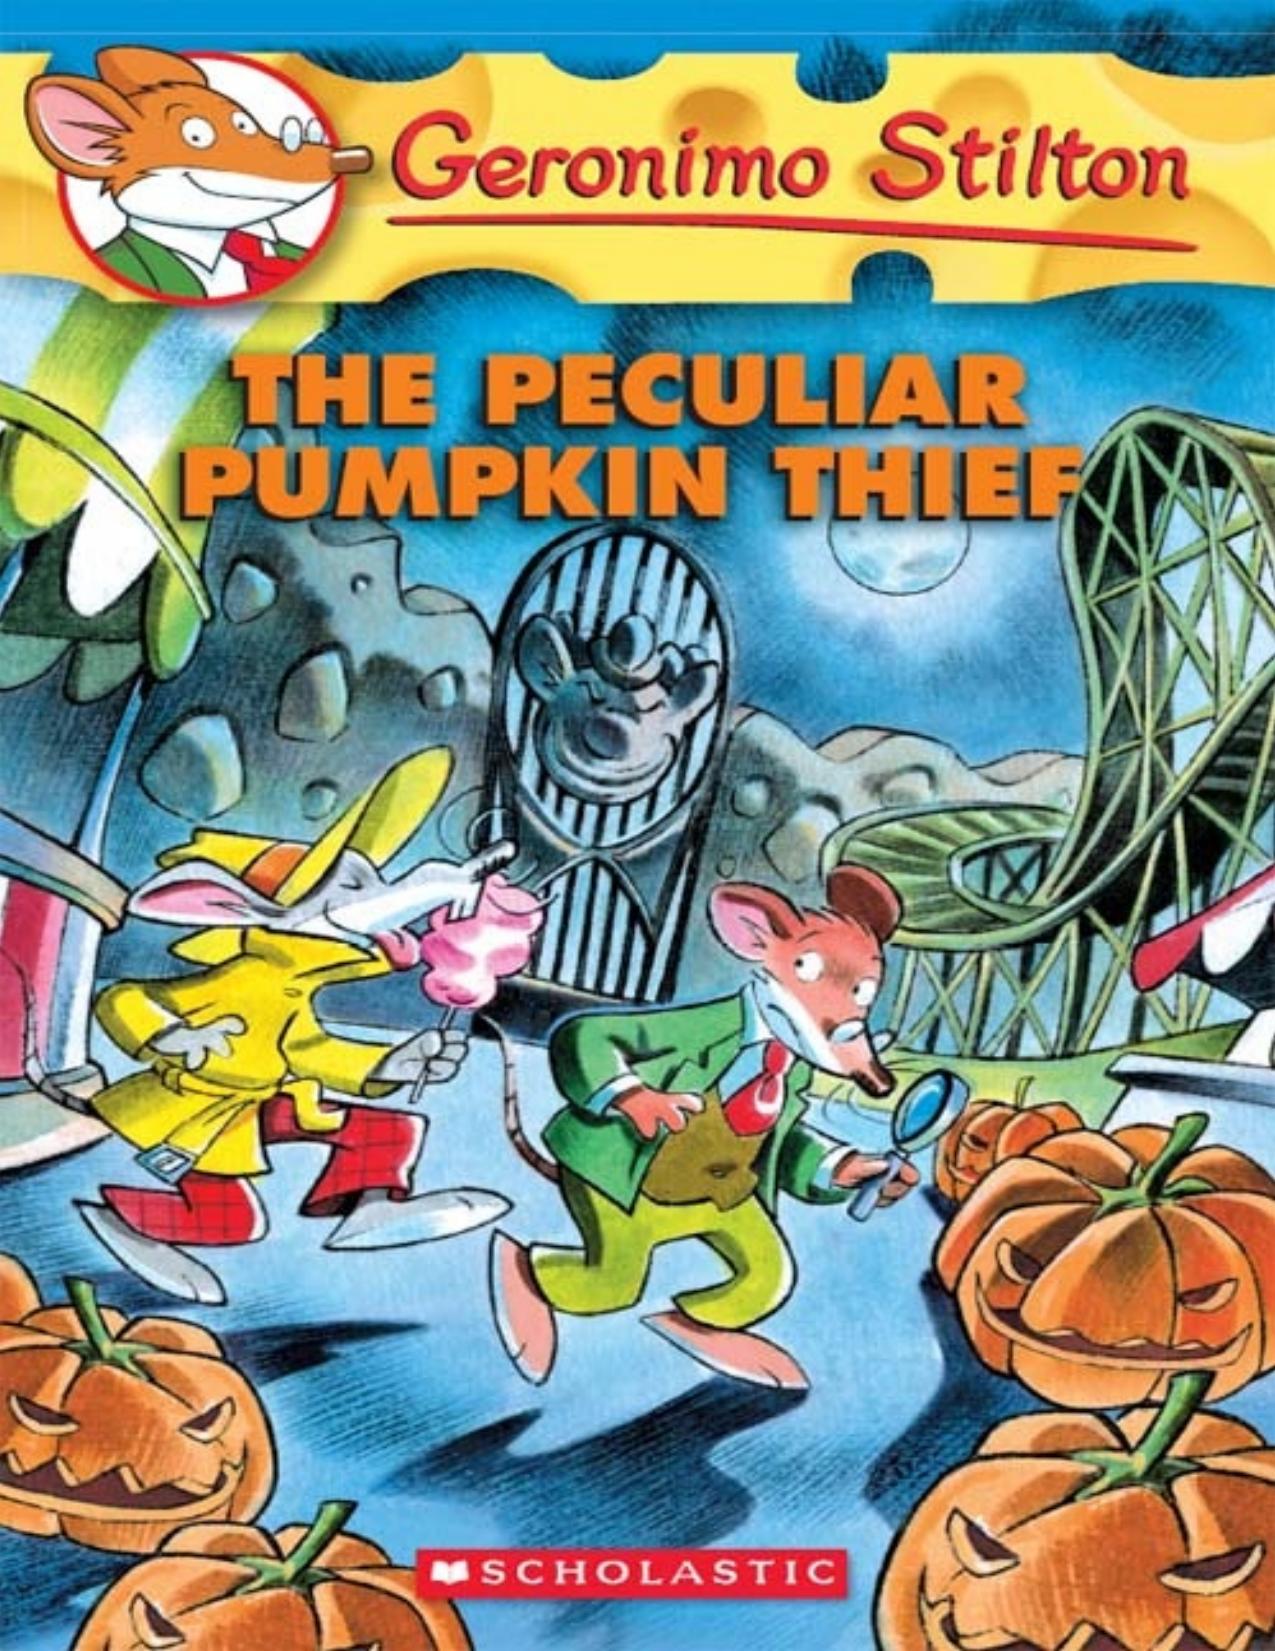 The Peculiar Pumpkin Thief by Geronimo Stilton